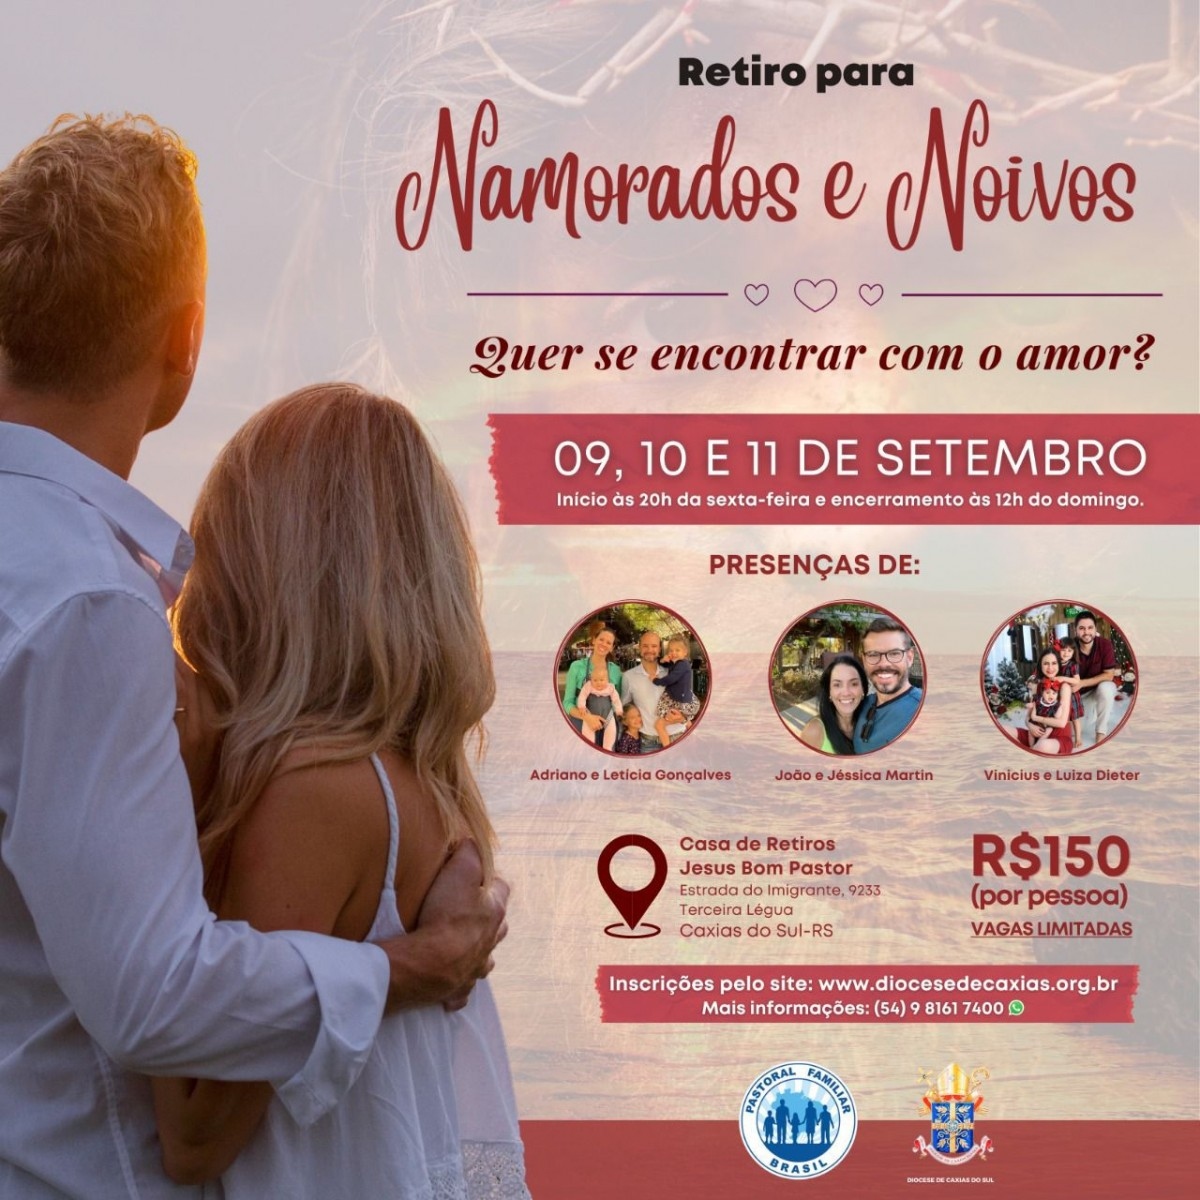 Pastoral Familiar da Diocese de Caxias do Sul prepara retiro para namorados e noivos